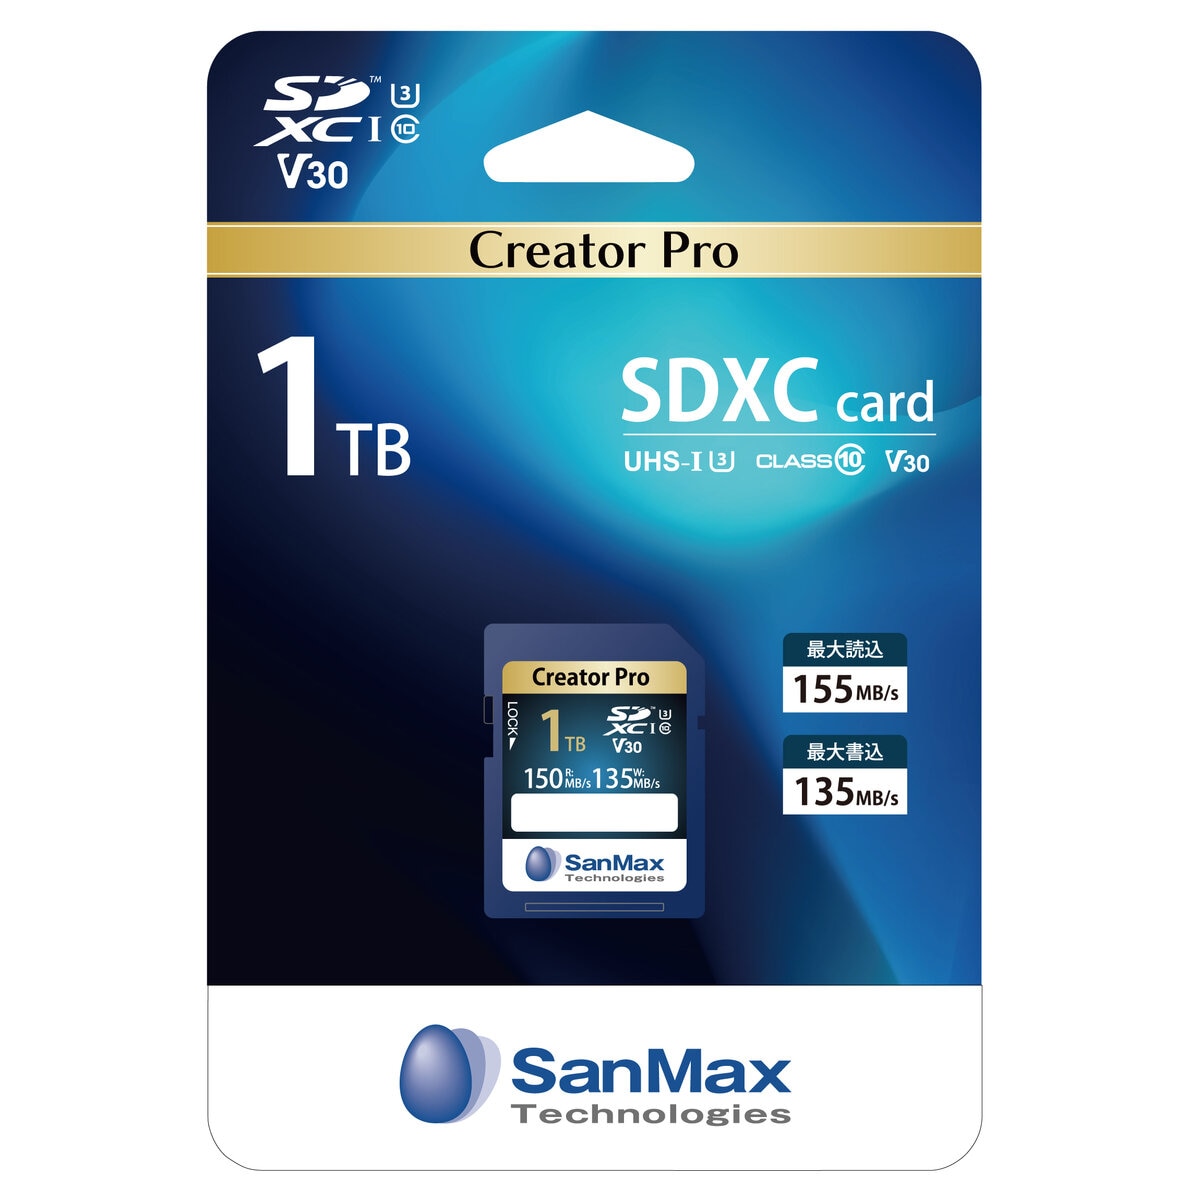 サンマックス SDXCカード 1TB Creator Pro | Costco Japan